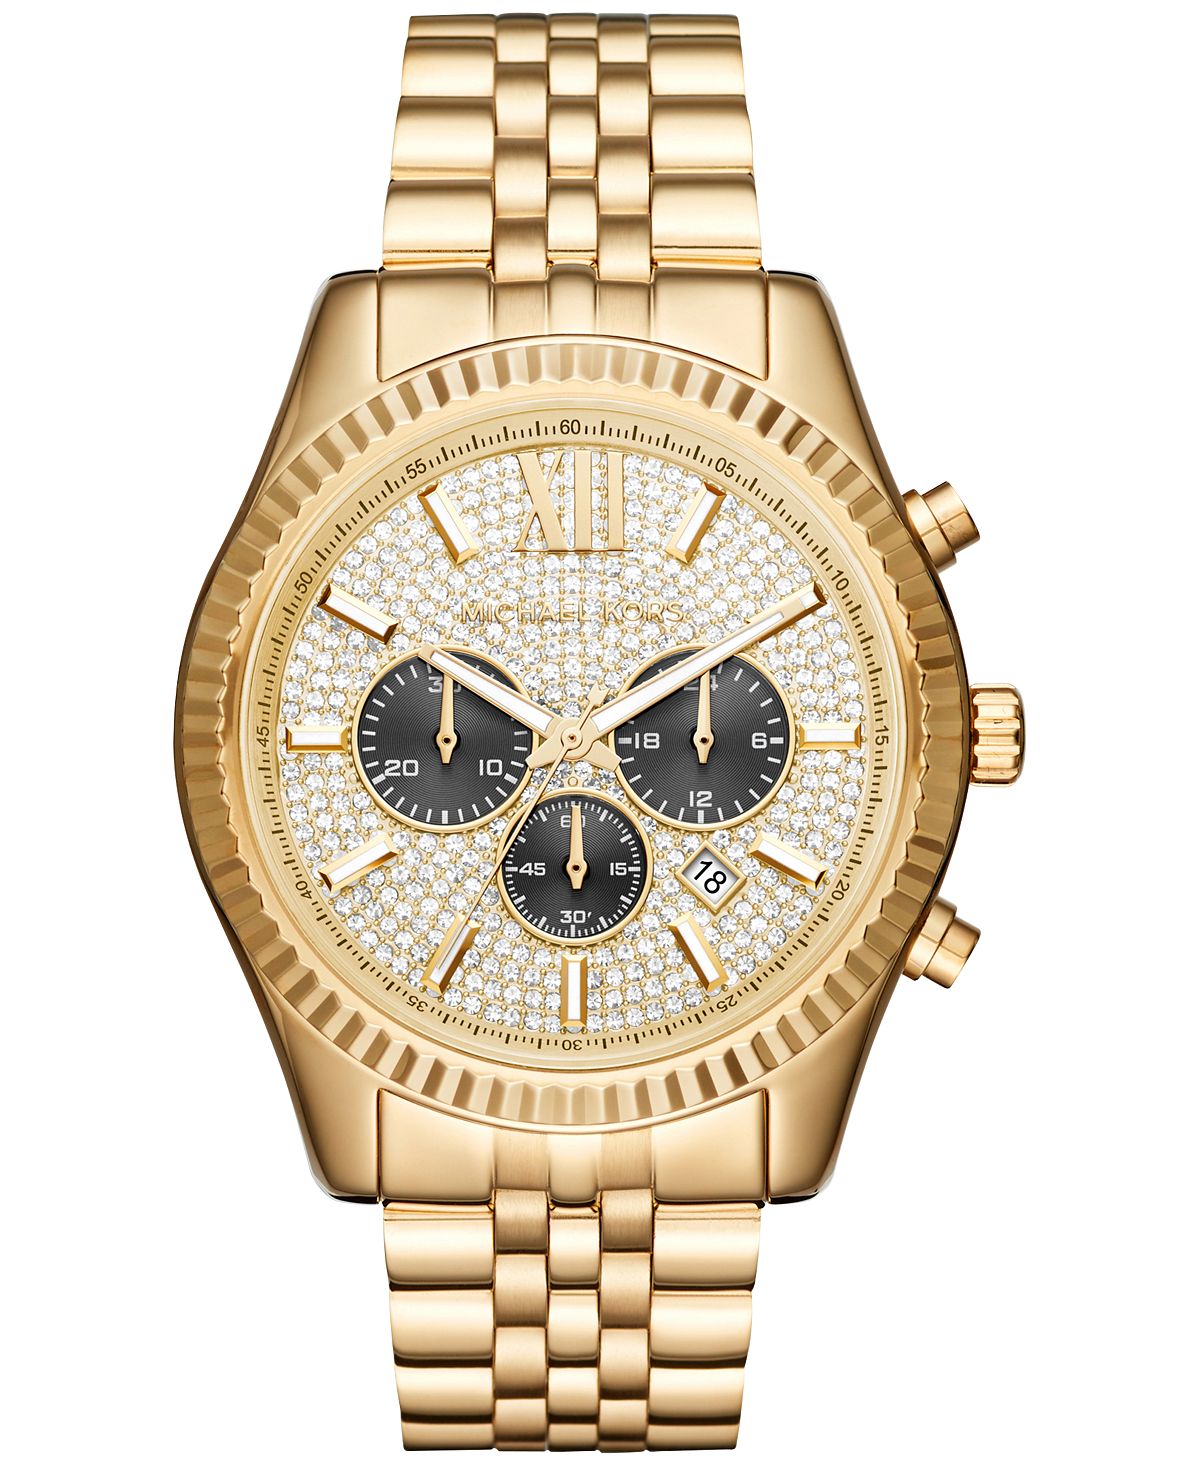 Мужские часы-хронограф Lexington с золотистым браслетом из нержавеющей стали, 44 мм, MK8494 Michael Kors luxury pave rhinestone wide bracelets